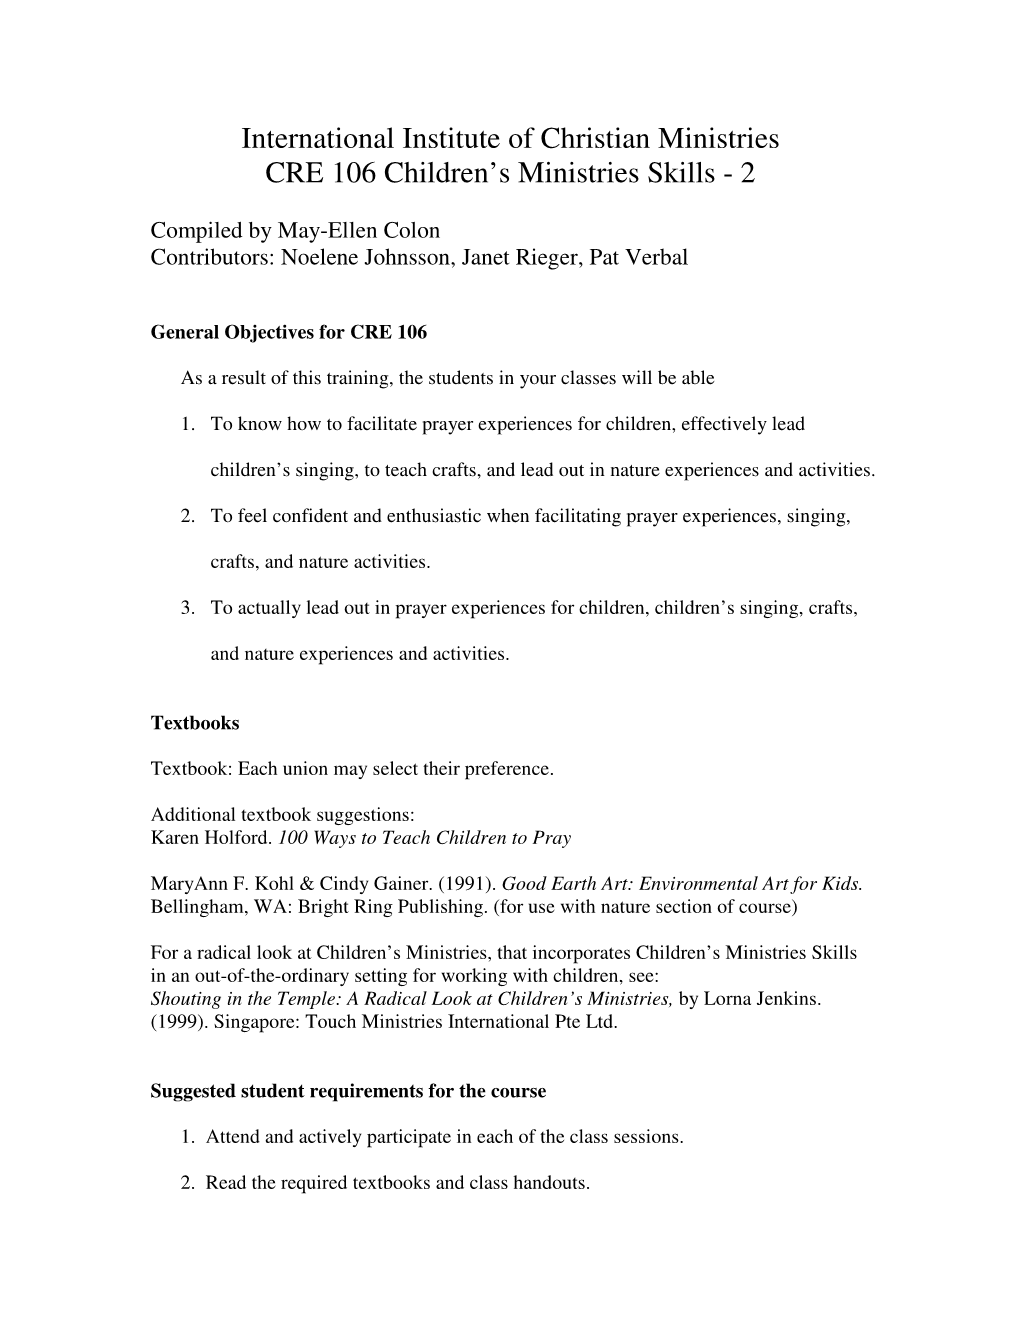 CRE 06 Children's Ministries Skills-2